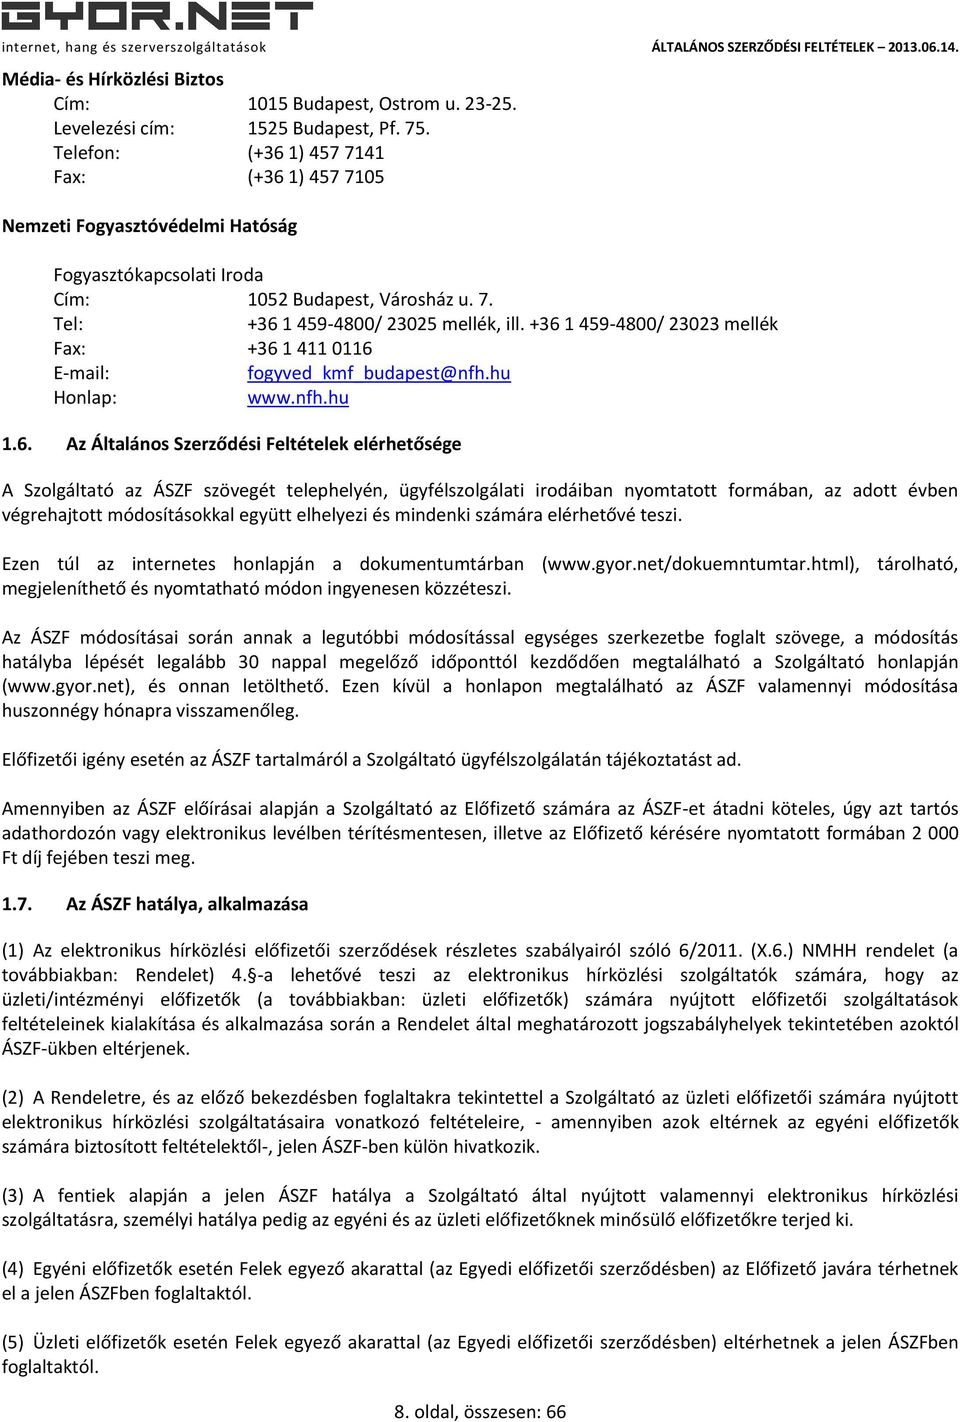 +36 1 459-4800/ 23023 mellék Fax: +36 1 411 0116 E-mail: fogyved_kmf_budapest@nfh.hu Honlap: www.nfh.hu 1.6. Az Általános Szerződési Feltételek elérhetősége A Szolgáltató az ÁSZF szövegét